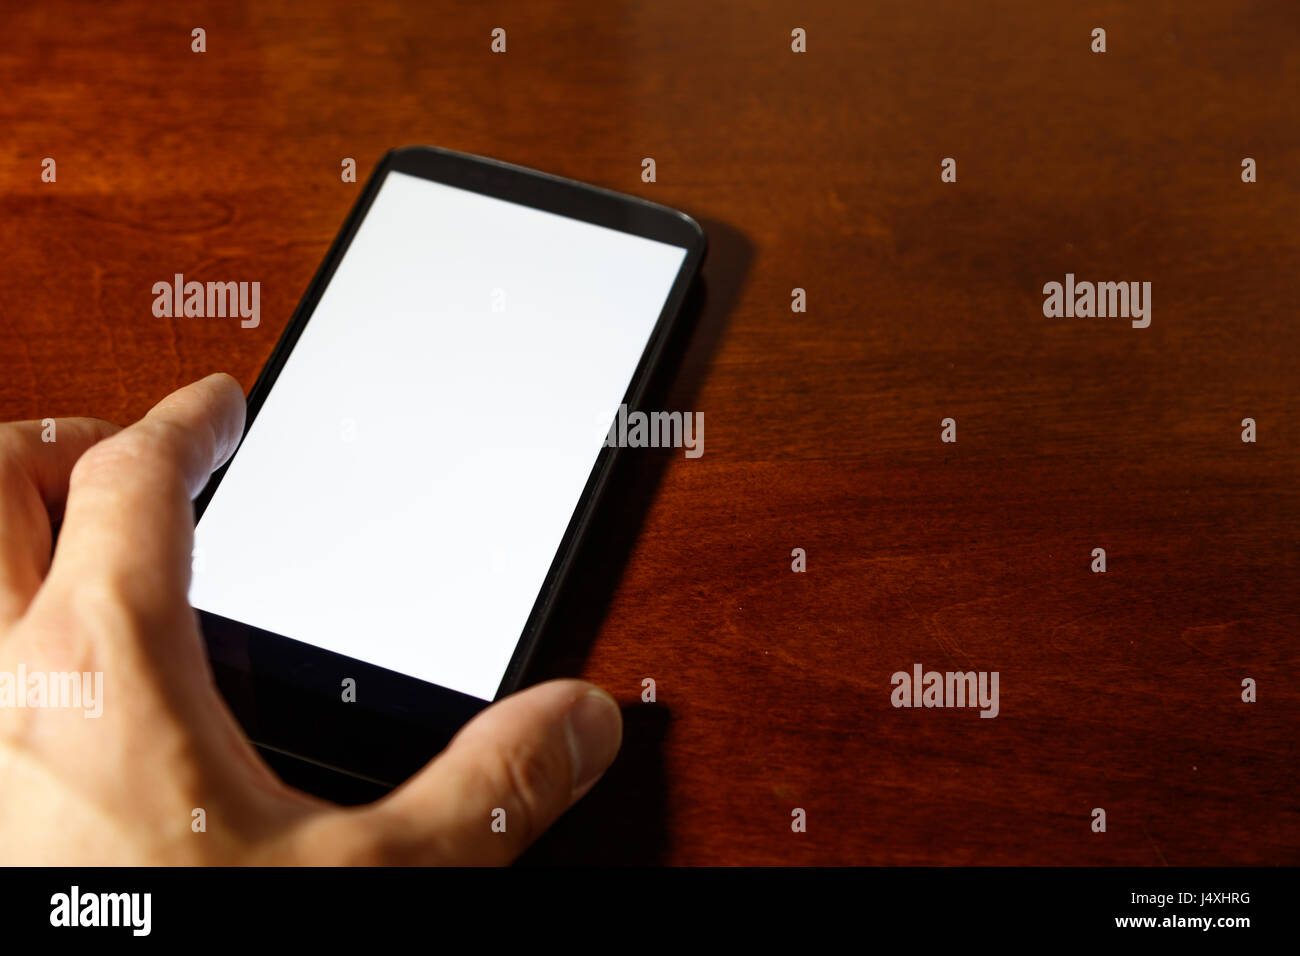 Mostrando smartphone con pantalla en blanco. El concepto de comunicación empresarial. Foto de stock